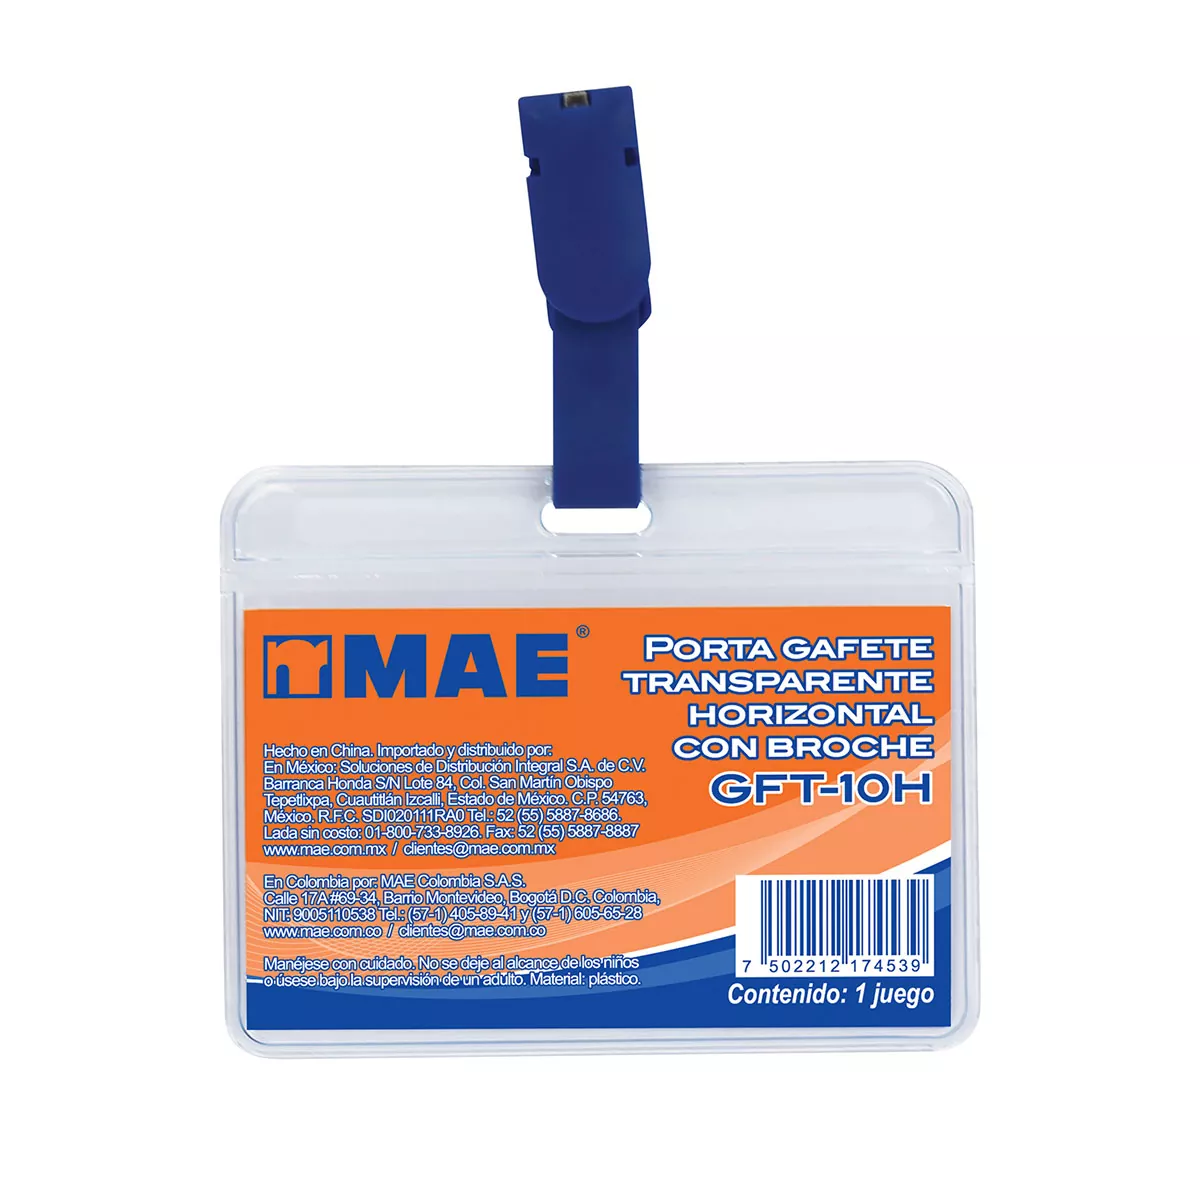 Gafete transparente horizontal marca mae Gafete transparente horizontal marca mae, compuesto de polipropileno, con broche en color azul, medida de la tarjeta interna: 9cm x 5.5cm                                                                                                                       1 pieza                                  - MAE